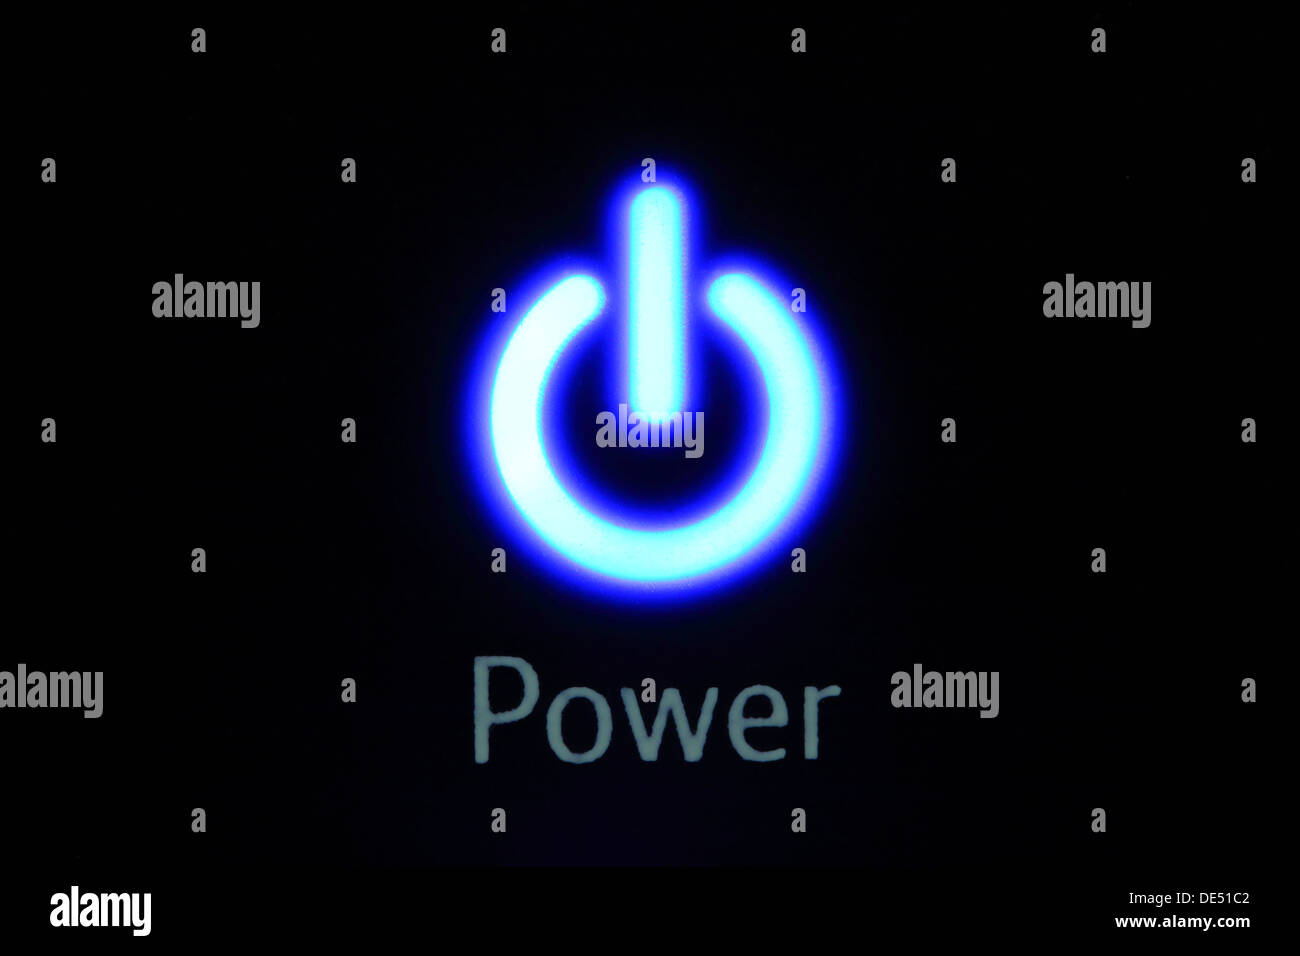 illuminated Power light icon on a broadband router Stock Photo